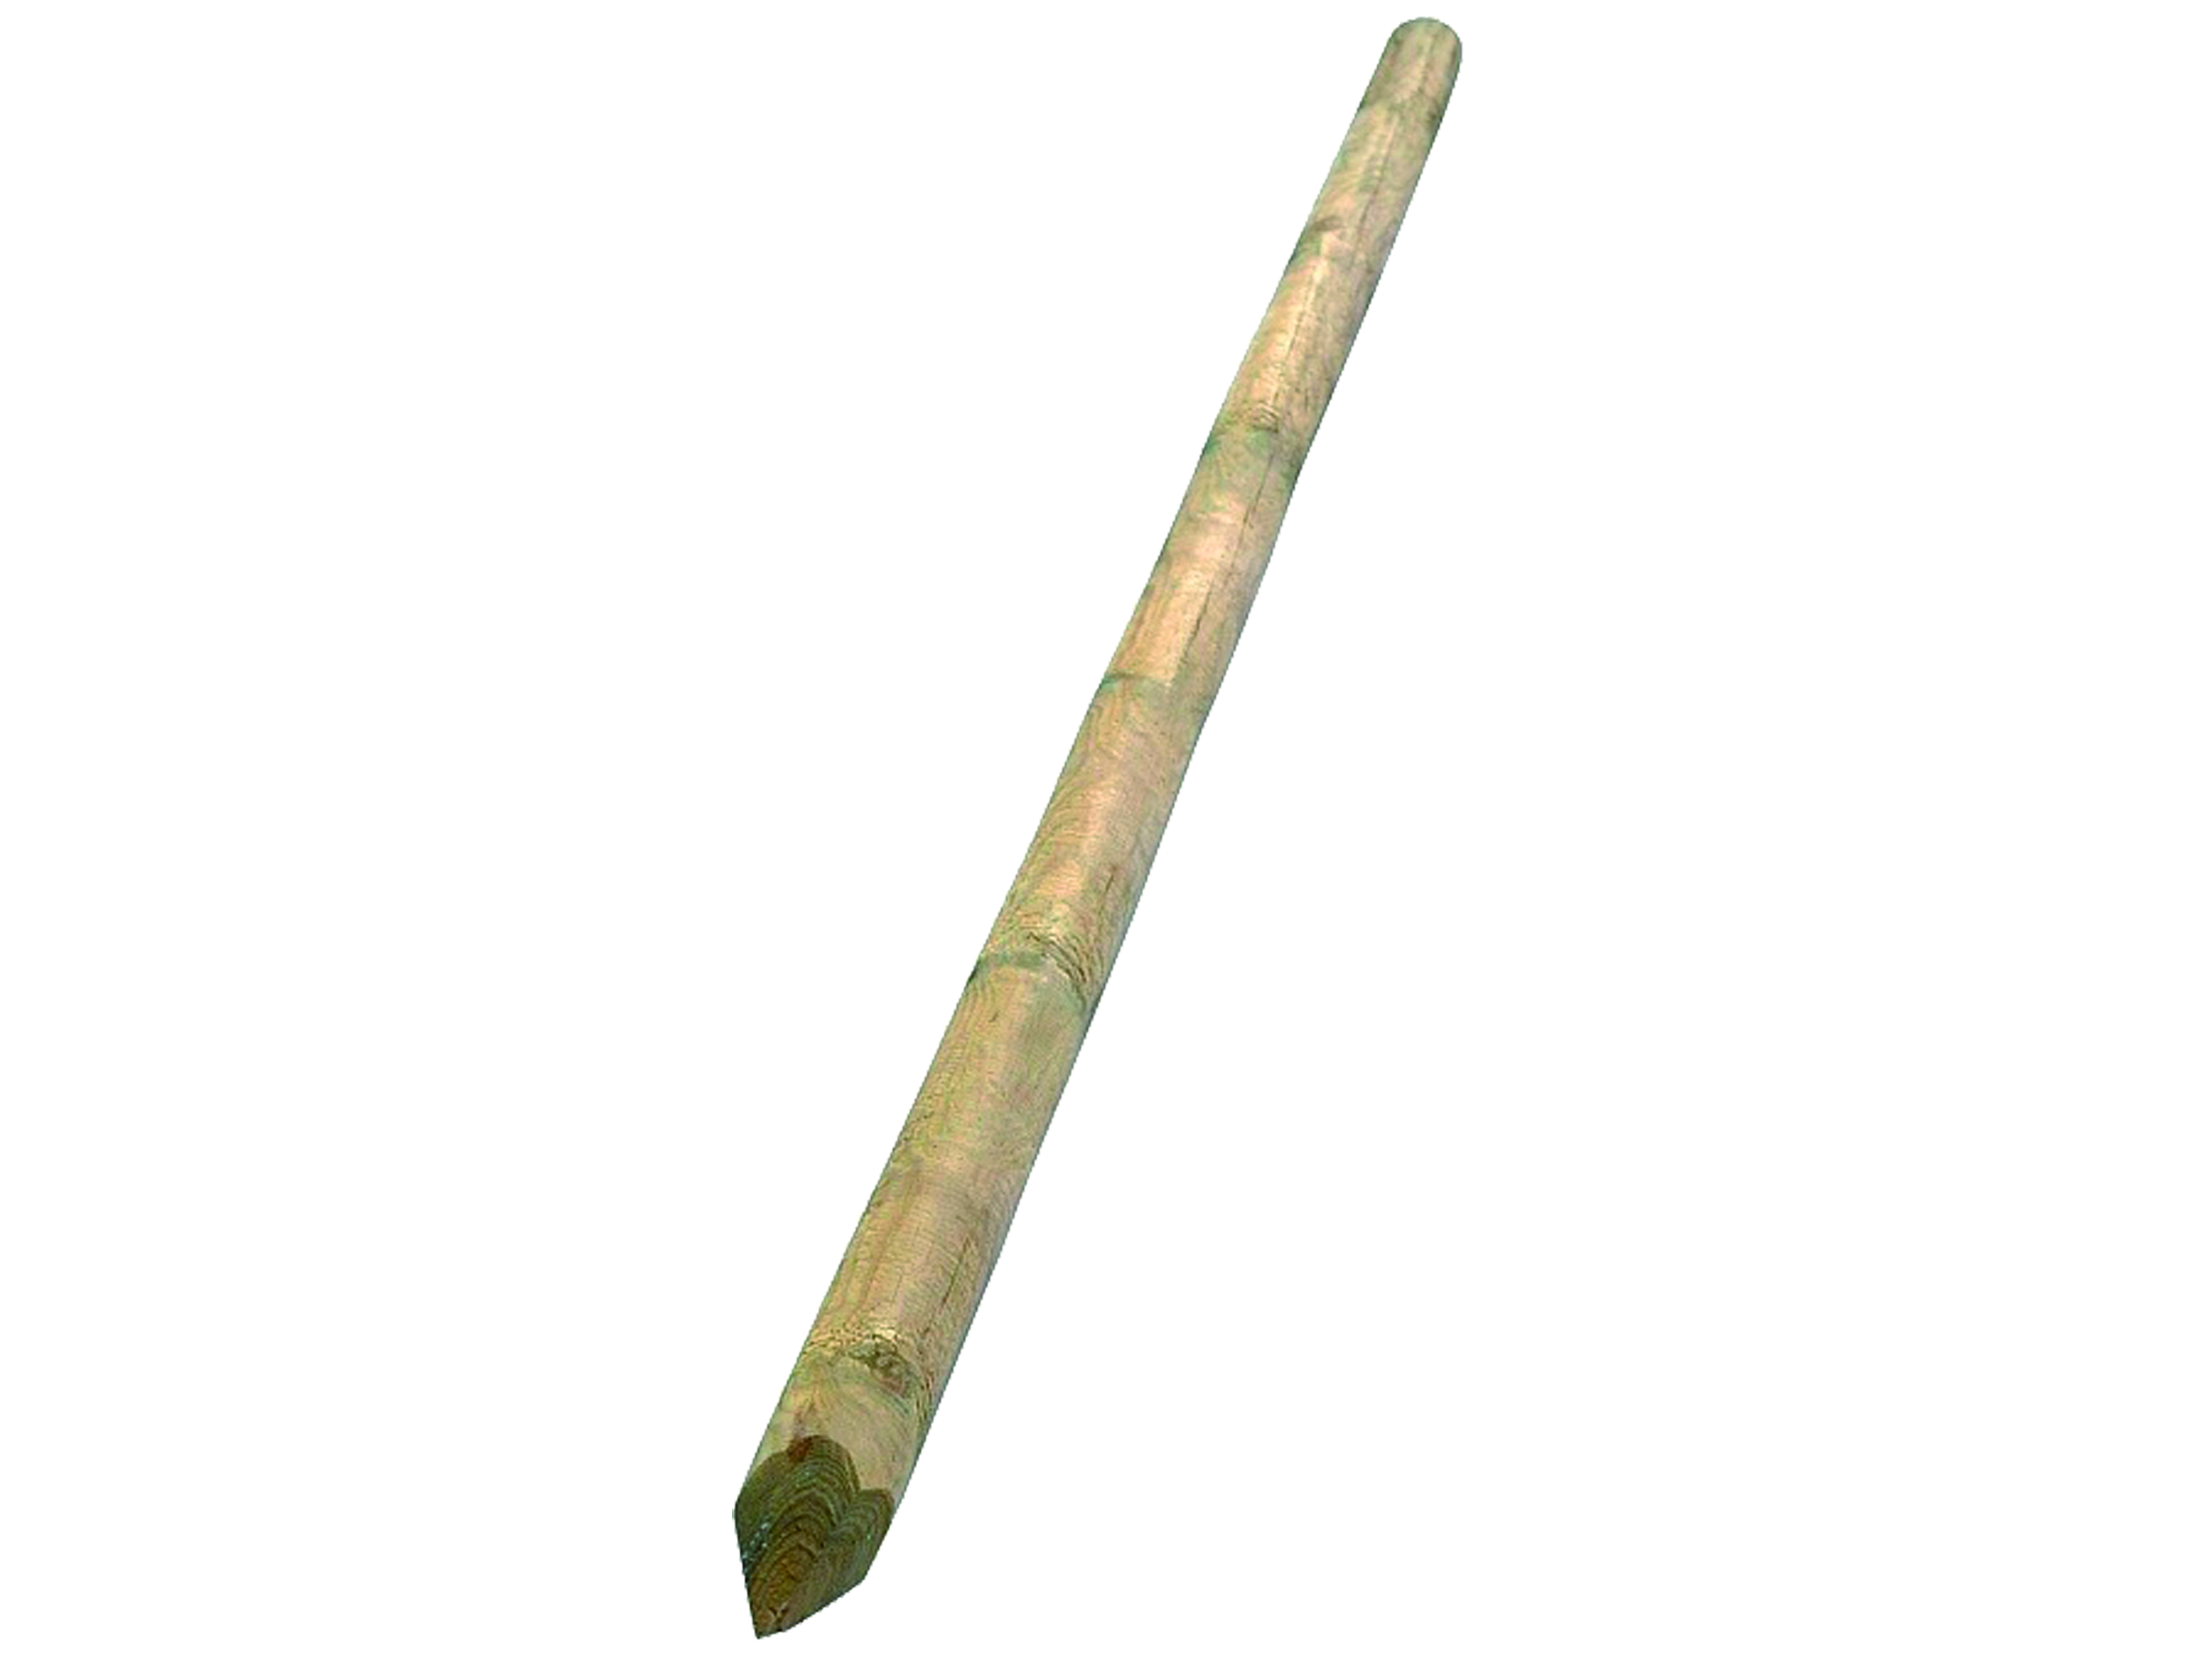 Kůl se špicí - pr. 6 cm/dl. 250 cm (Osobní odběr)